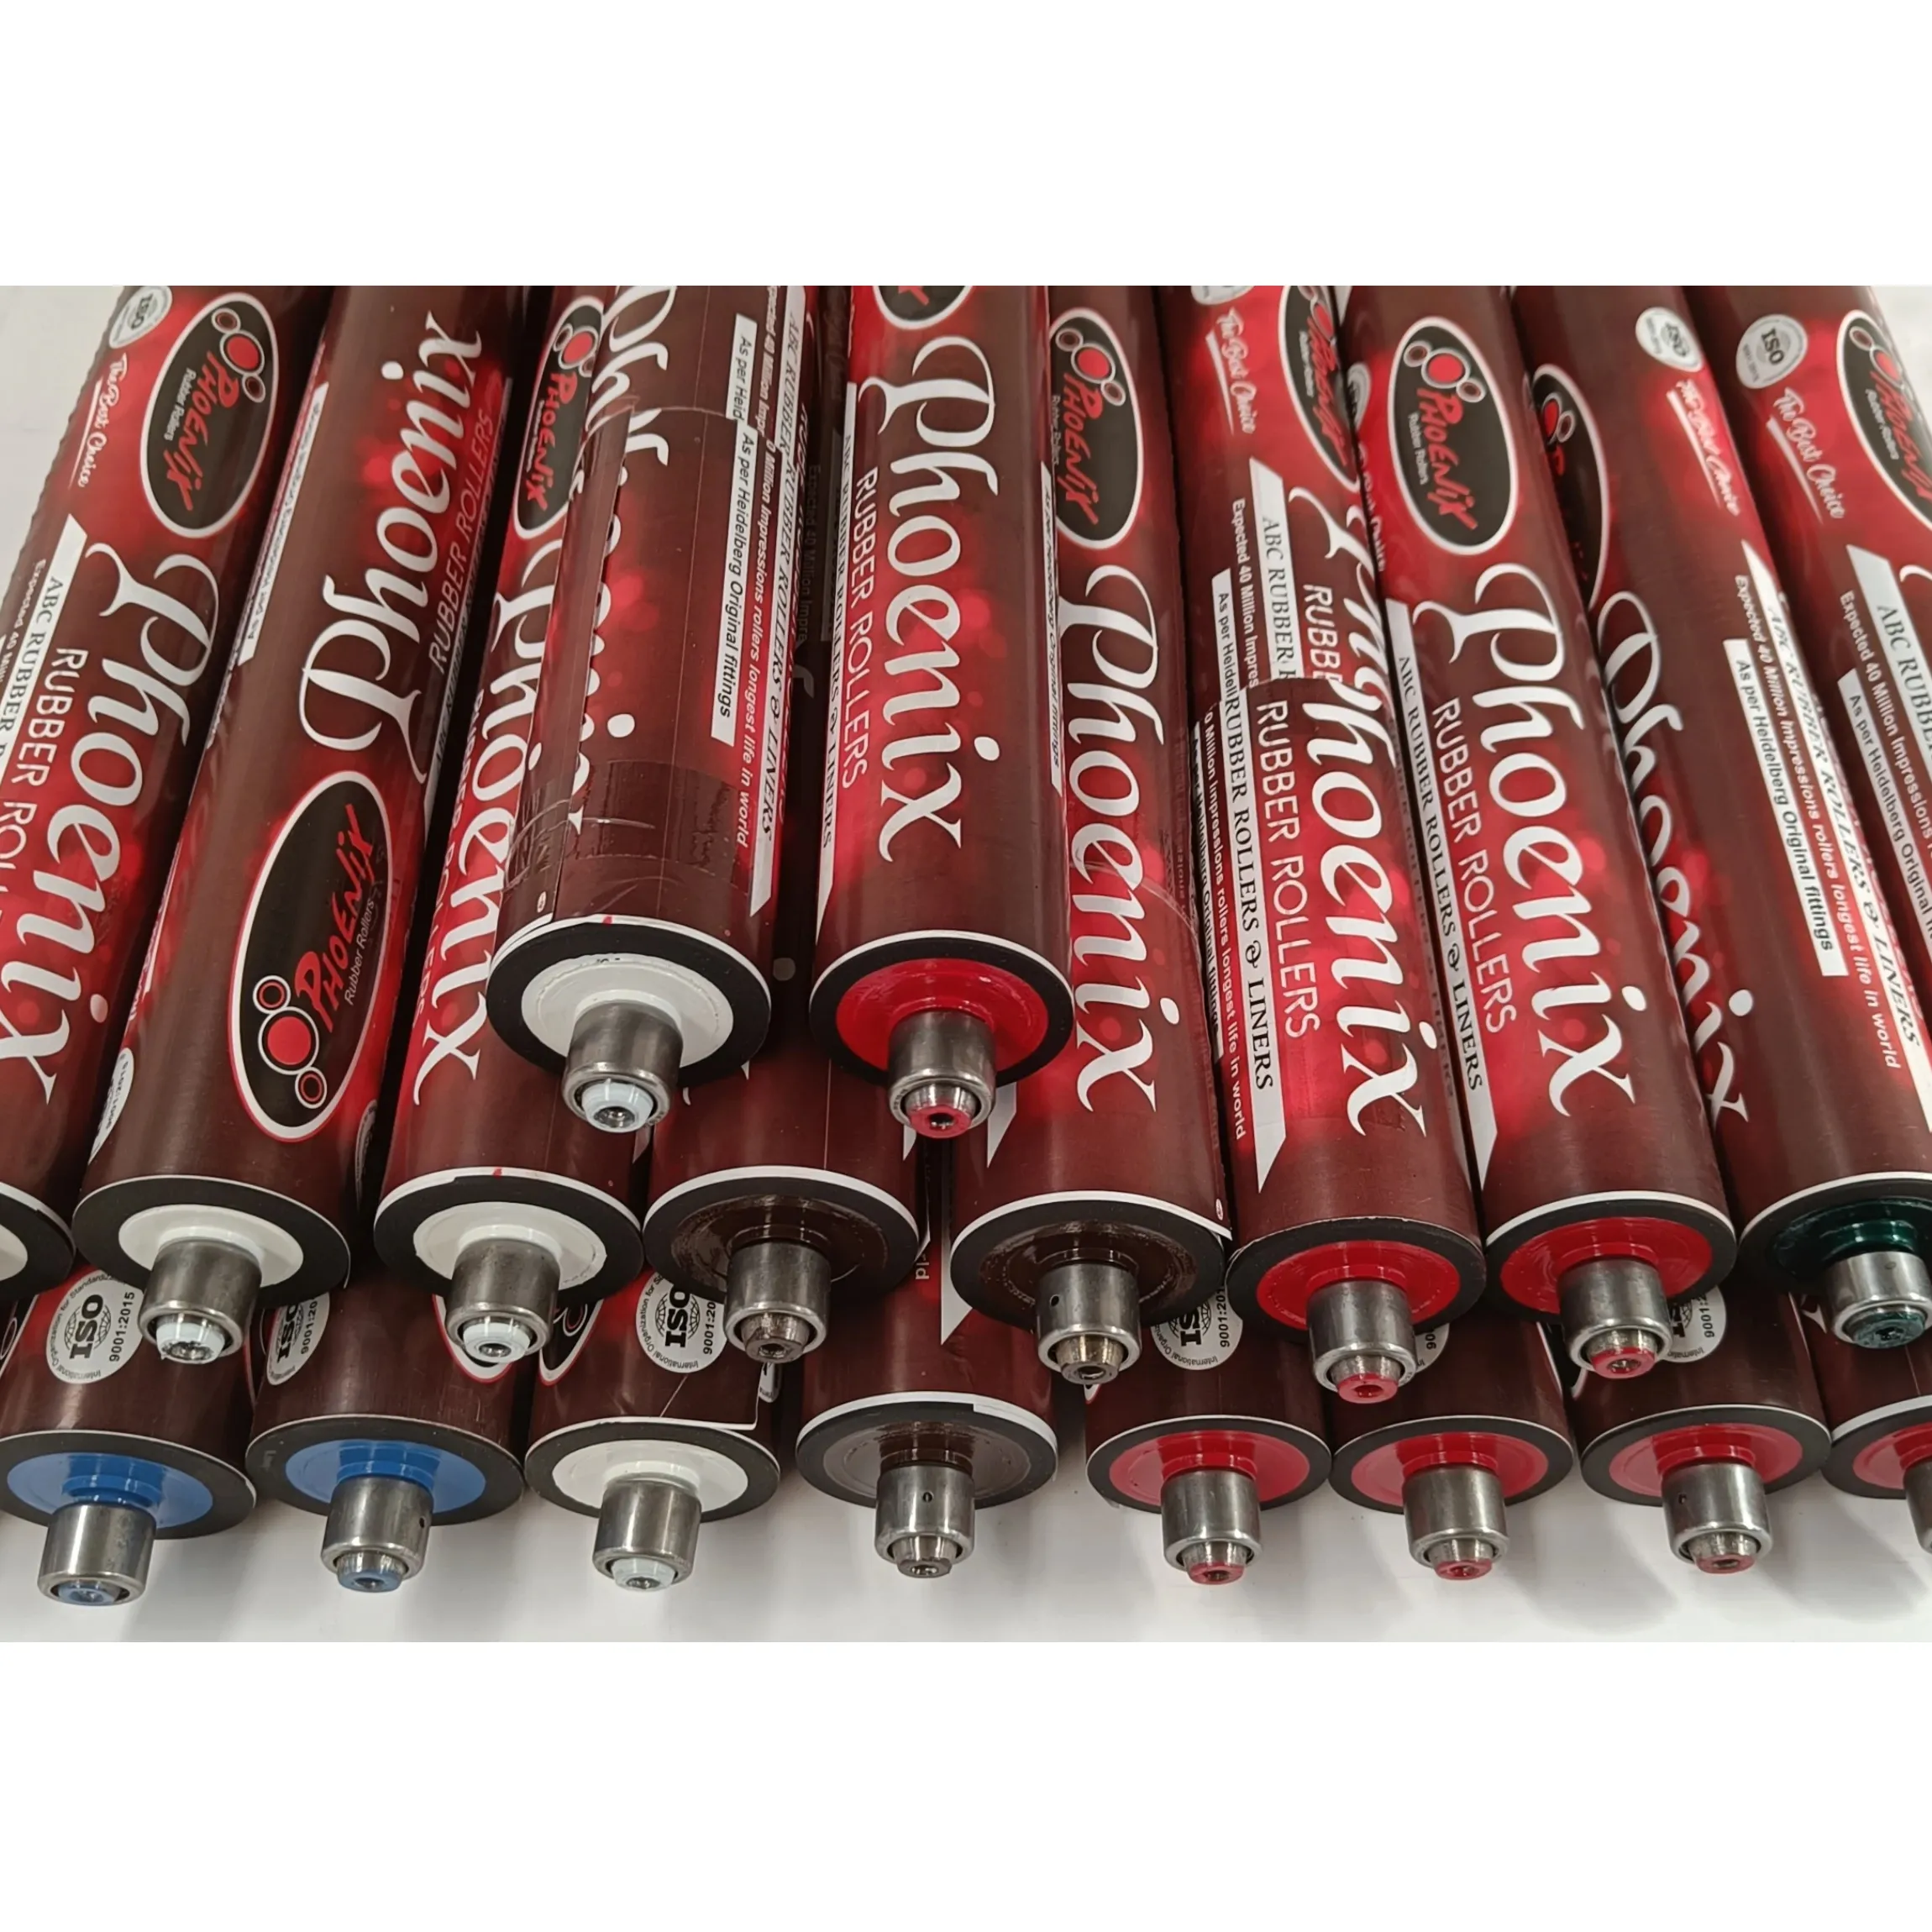 Heidelberg Kord Rubber rollers offset printing press rubber rollers ink and dampening rollers with bearings